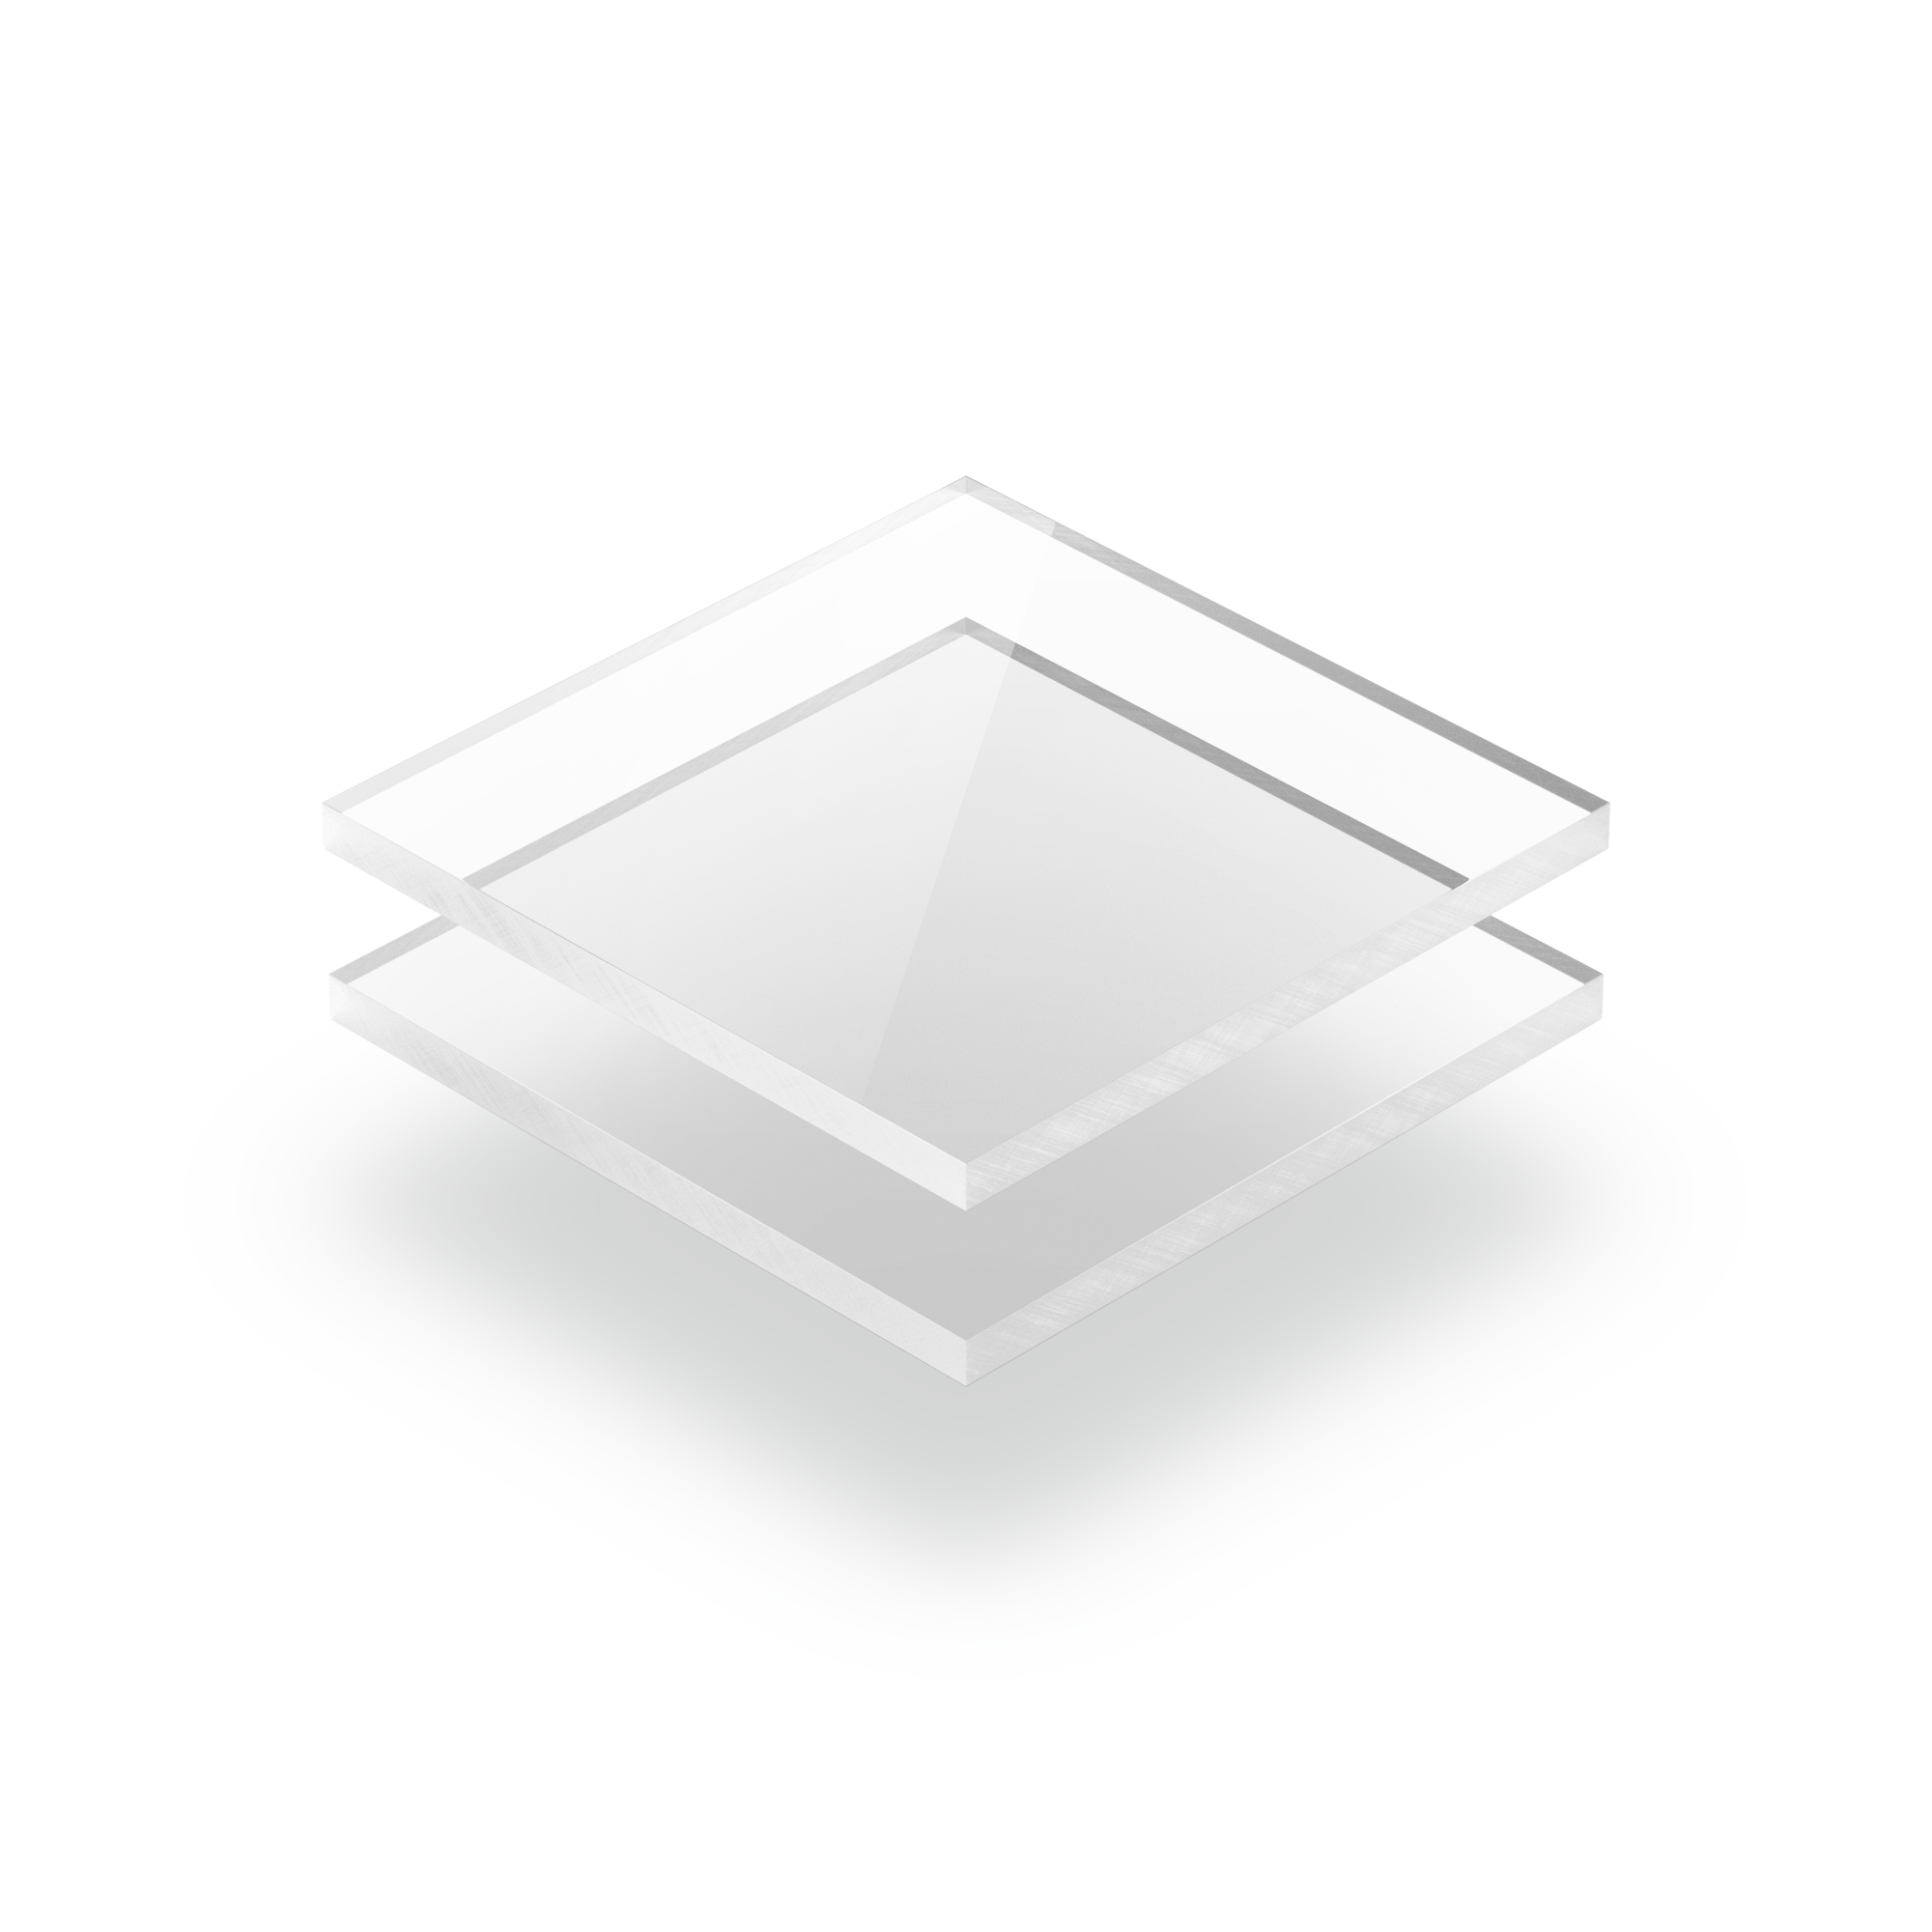 POLIVER Plexiglass Sintetico Trasparente 100x100 cm - Spessore 2.5 mm